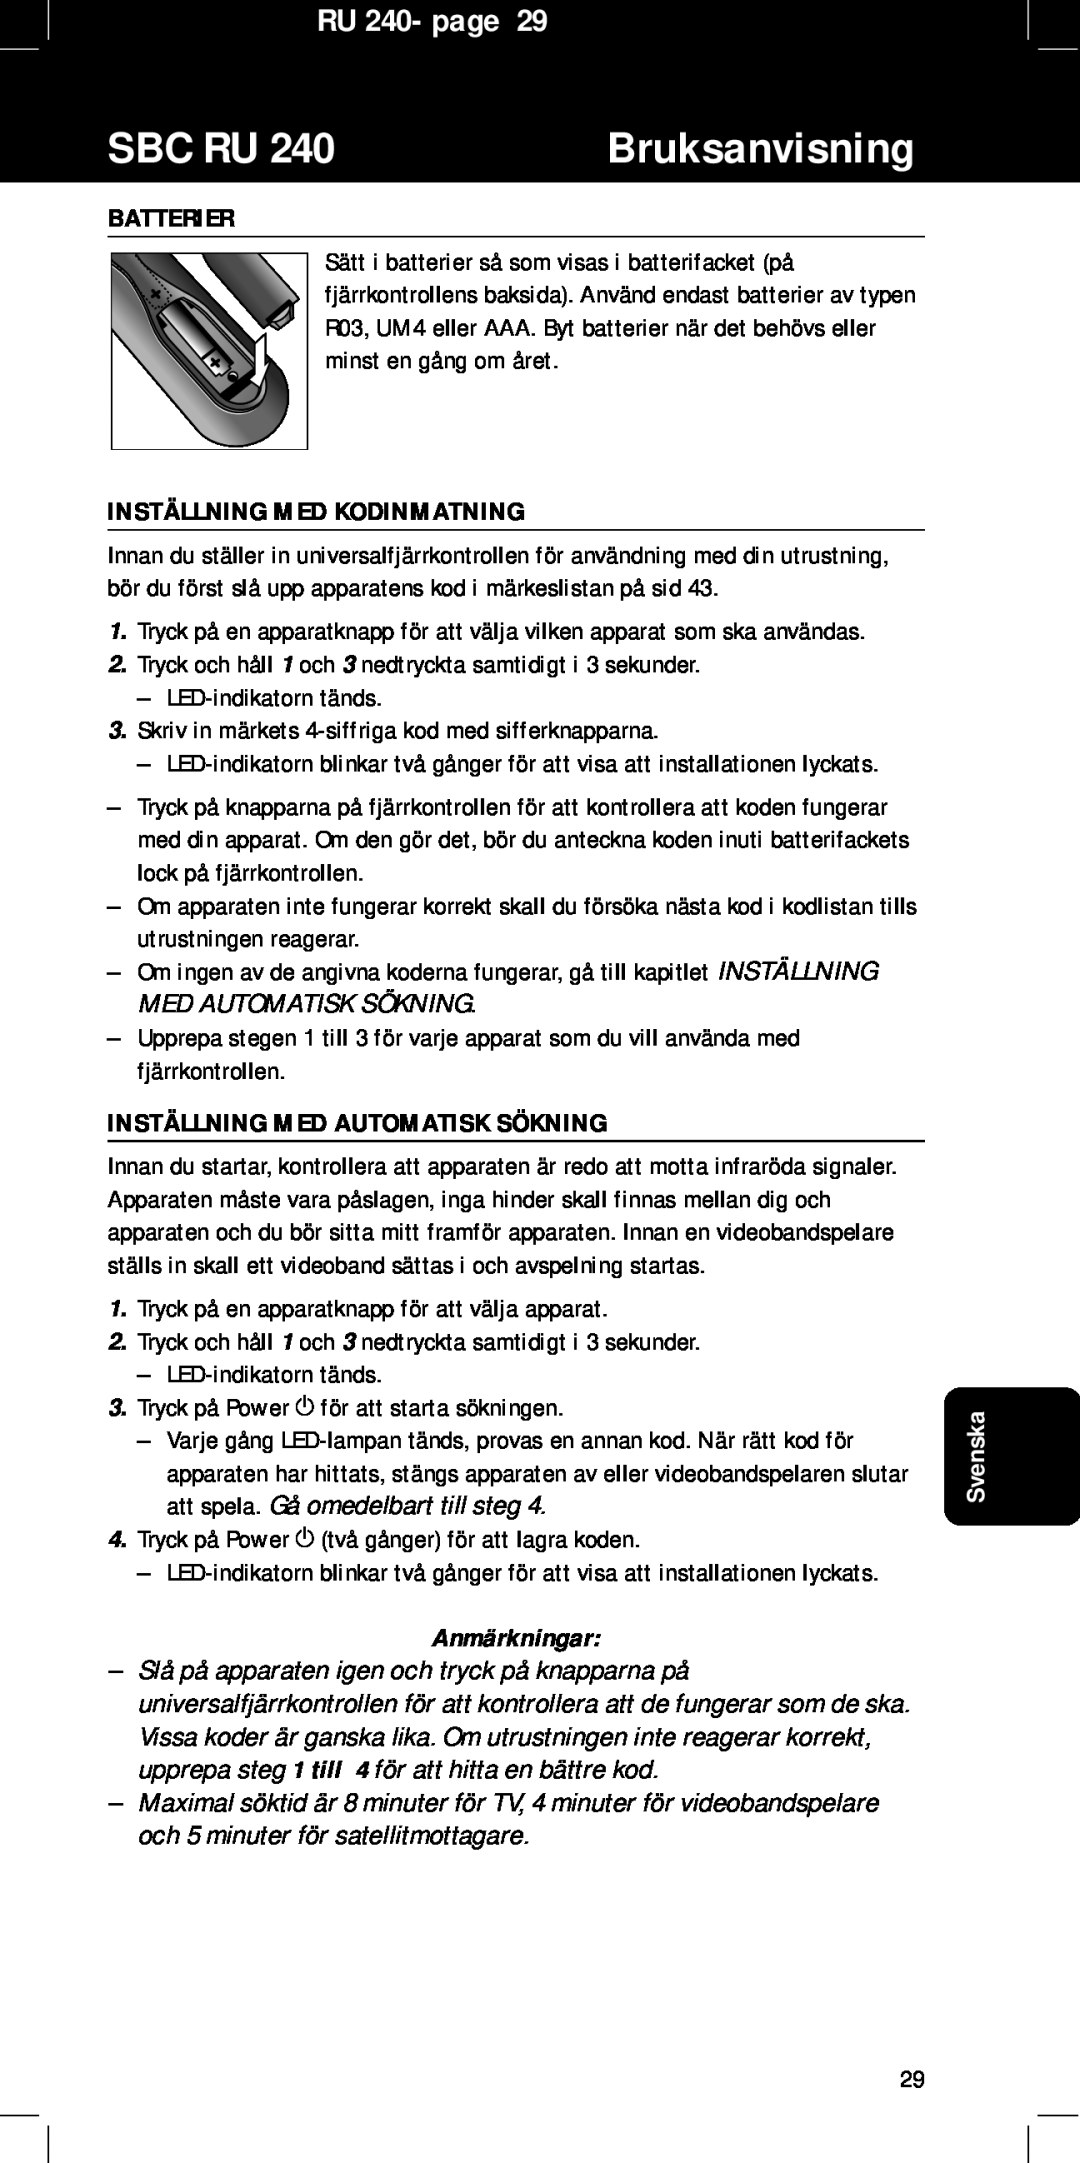 Philips SBC RU240/00U manual Sbc Ru, Bruksanvisning, RU 240- page, Batterier, Inställning Med Kodinmatning, Anmärkningar 